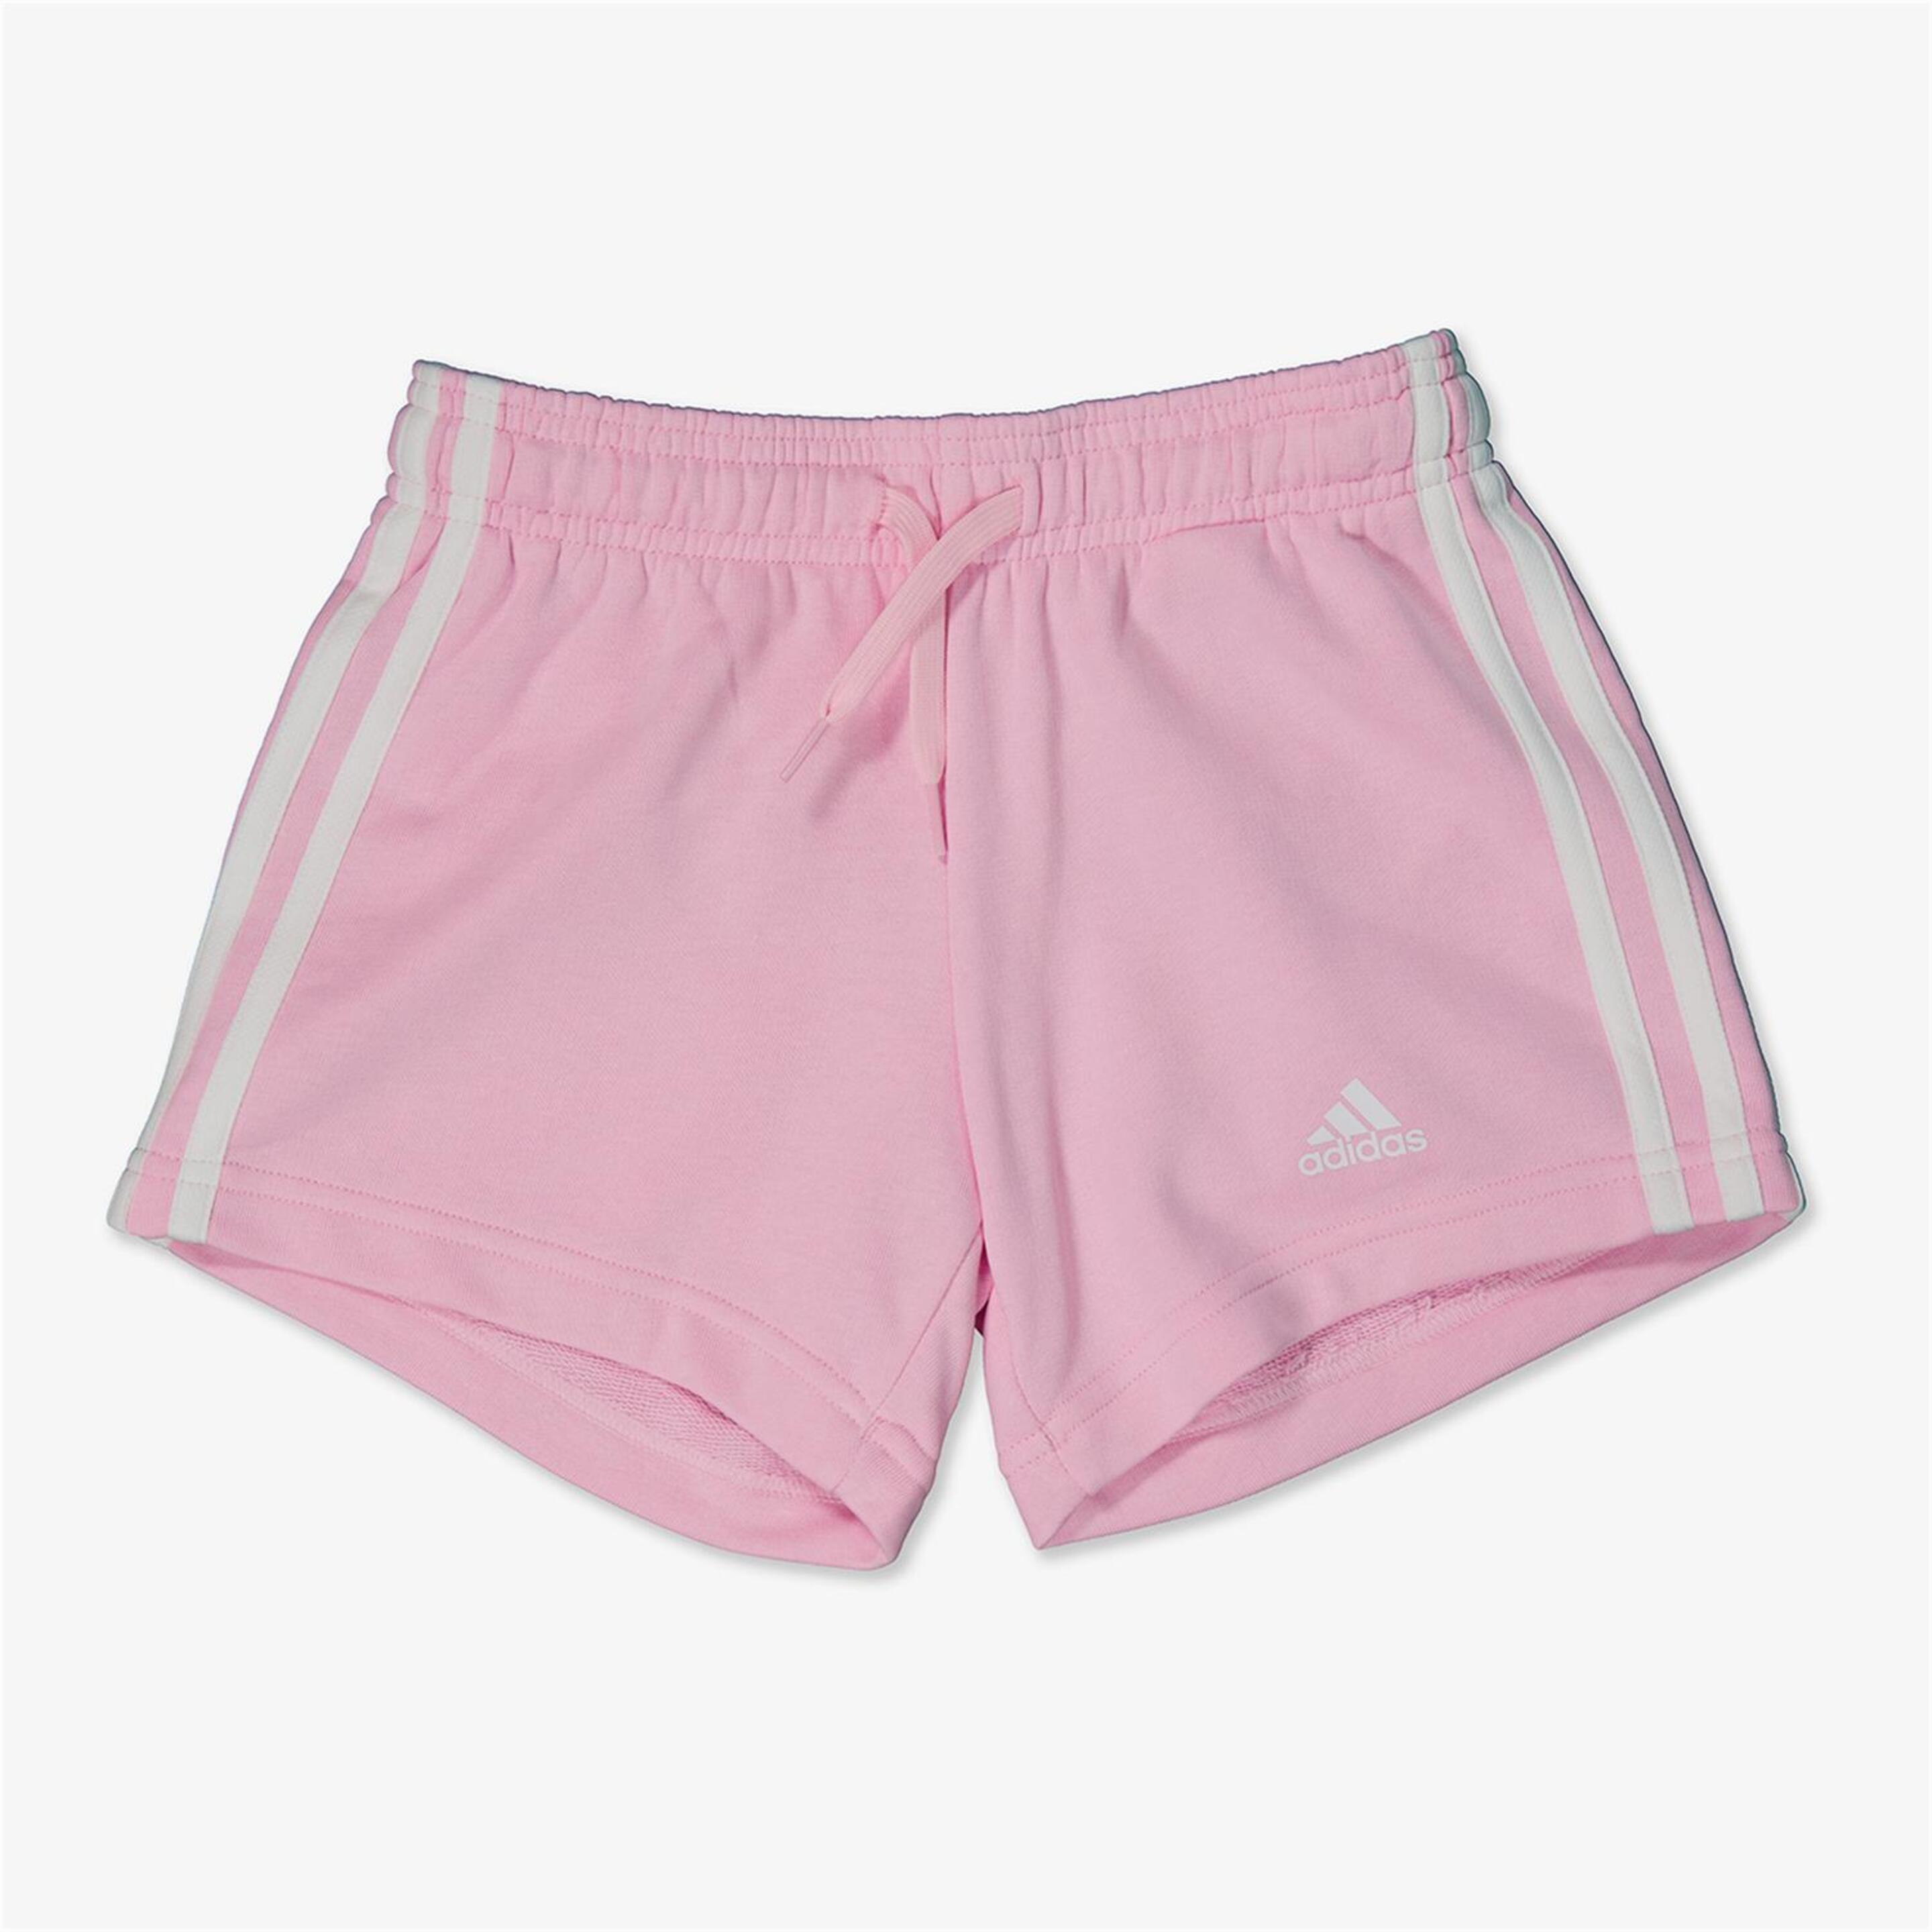 Pantalón adidas - rosa - Pantalón Niña